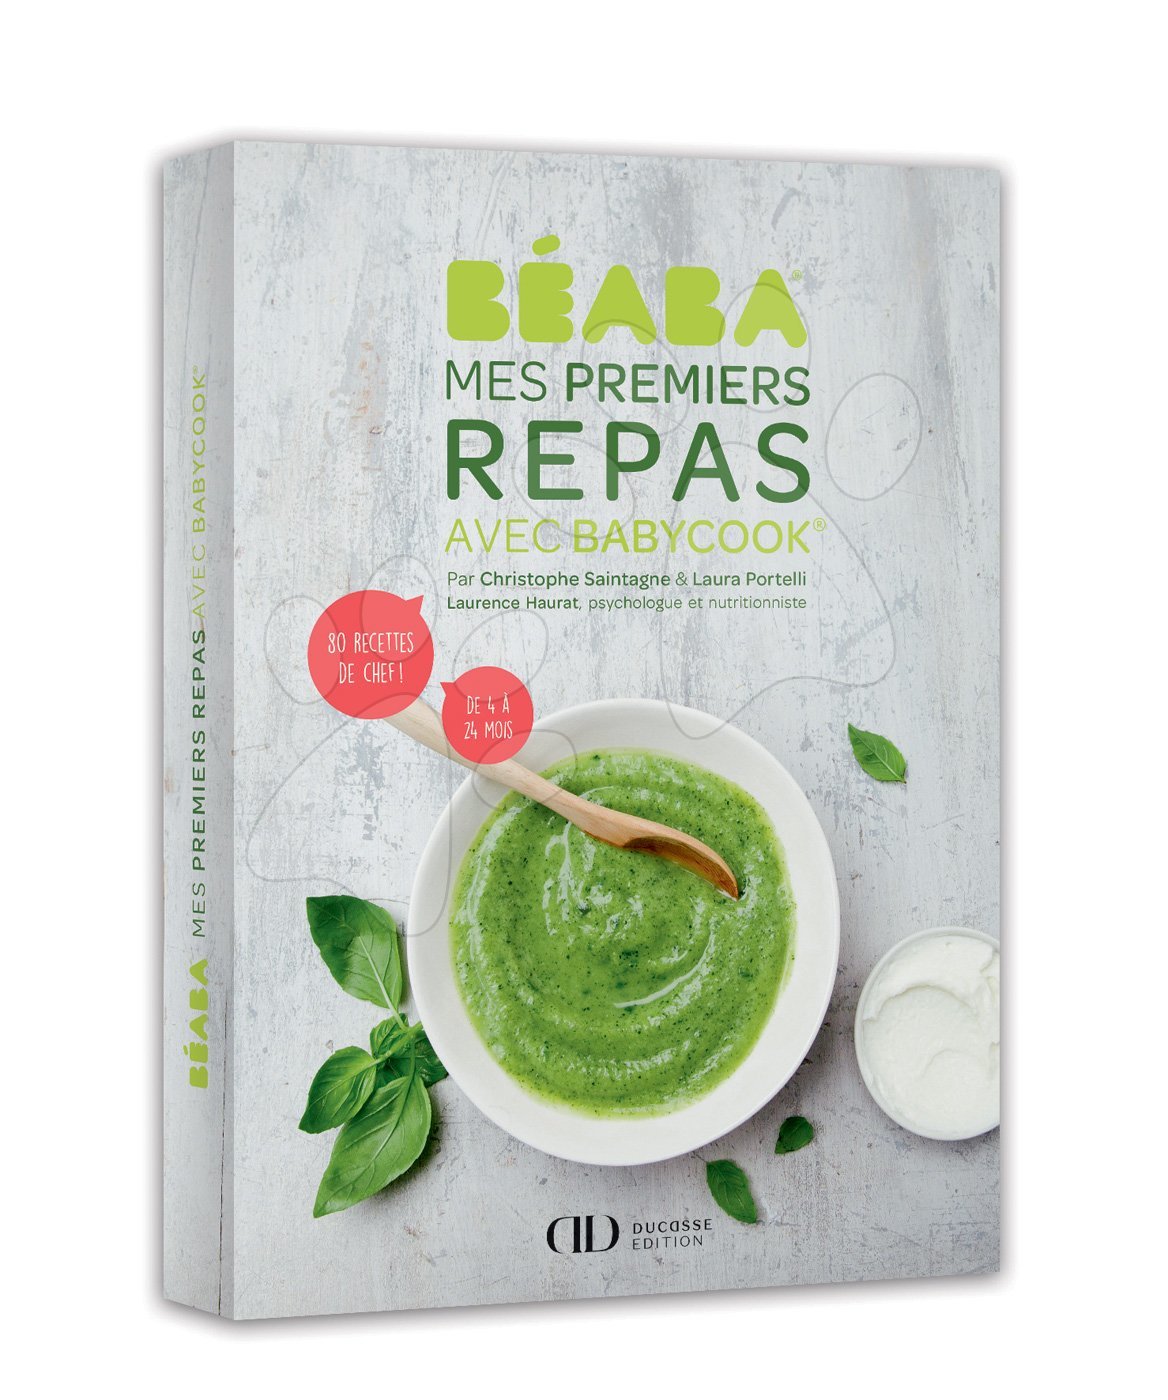 Beaba kuchárska kniha podľa sezóny vo francúzštine 80 ilustrovaných receptov 912697